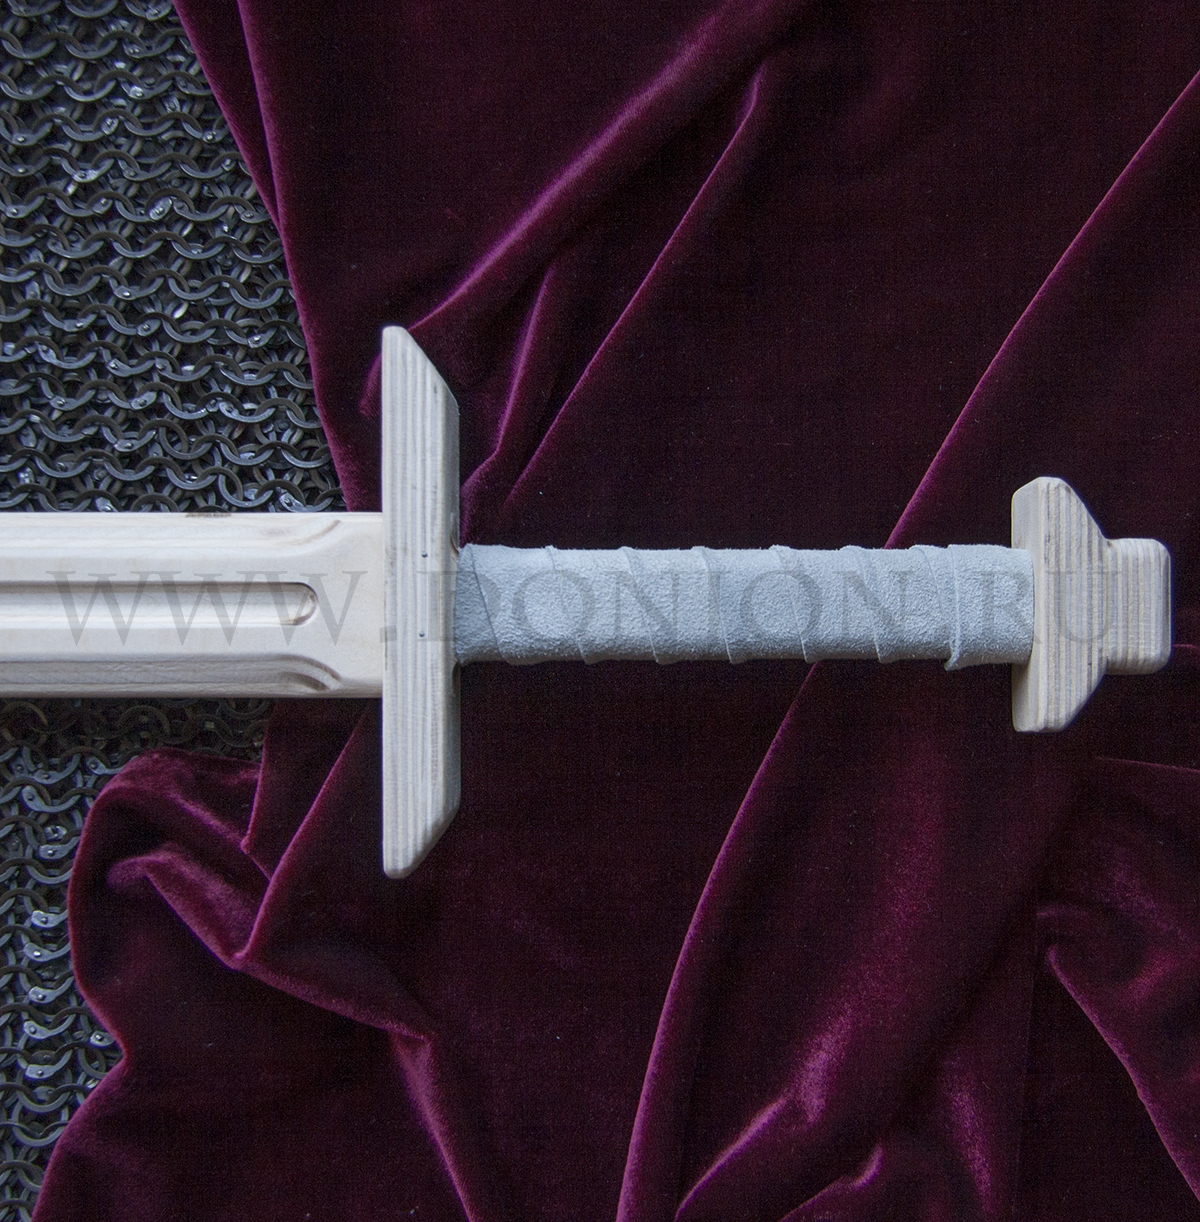 Деревянный меч "Викинг" (ВАК)